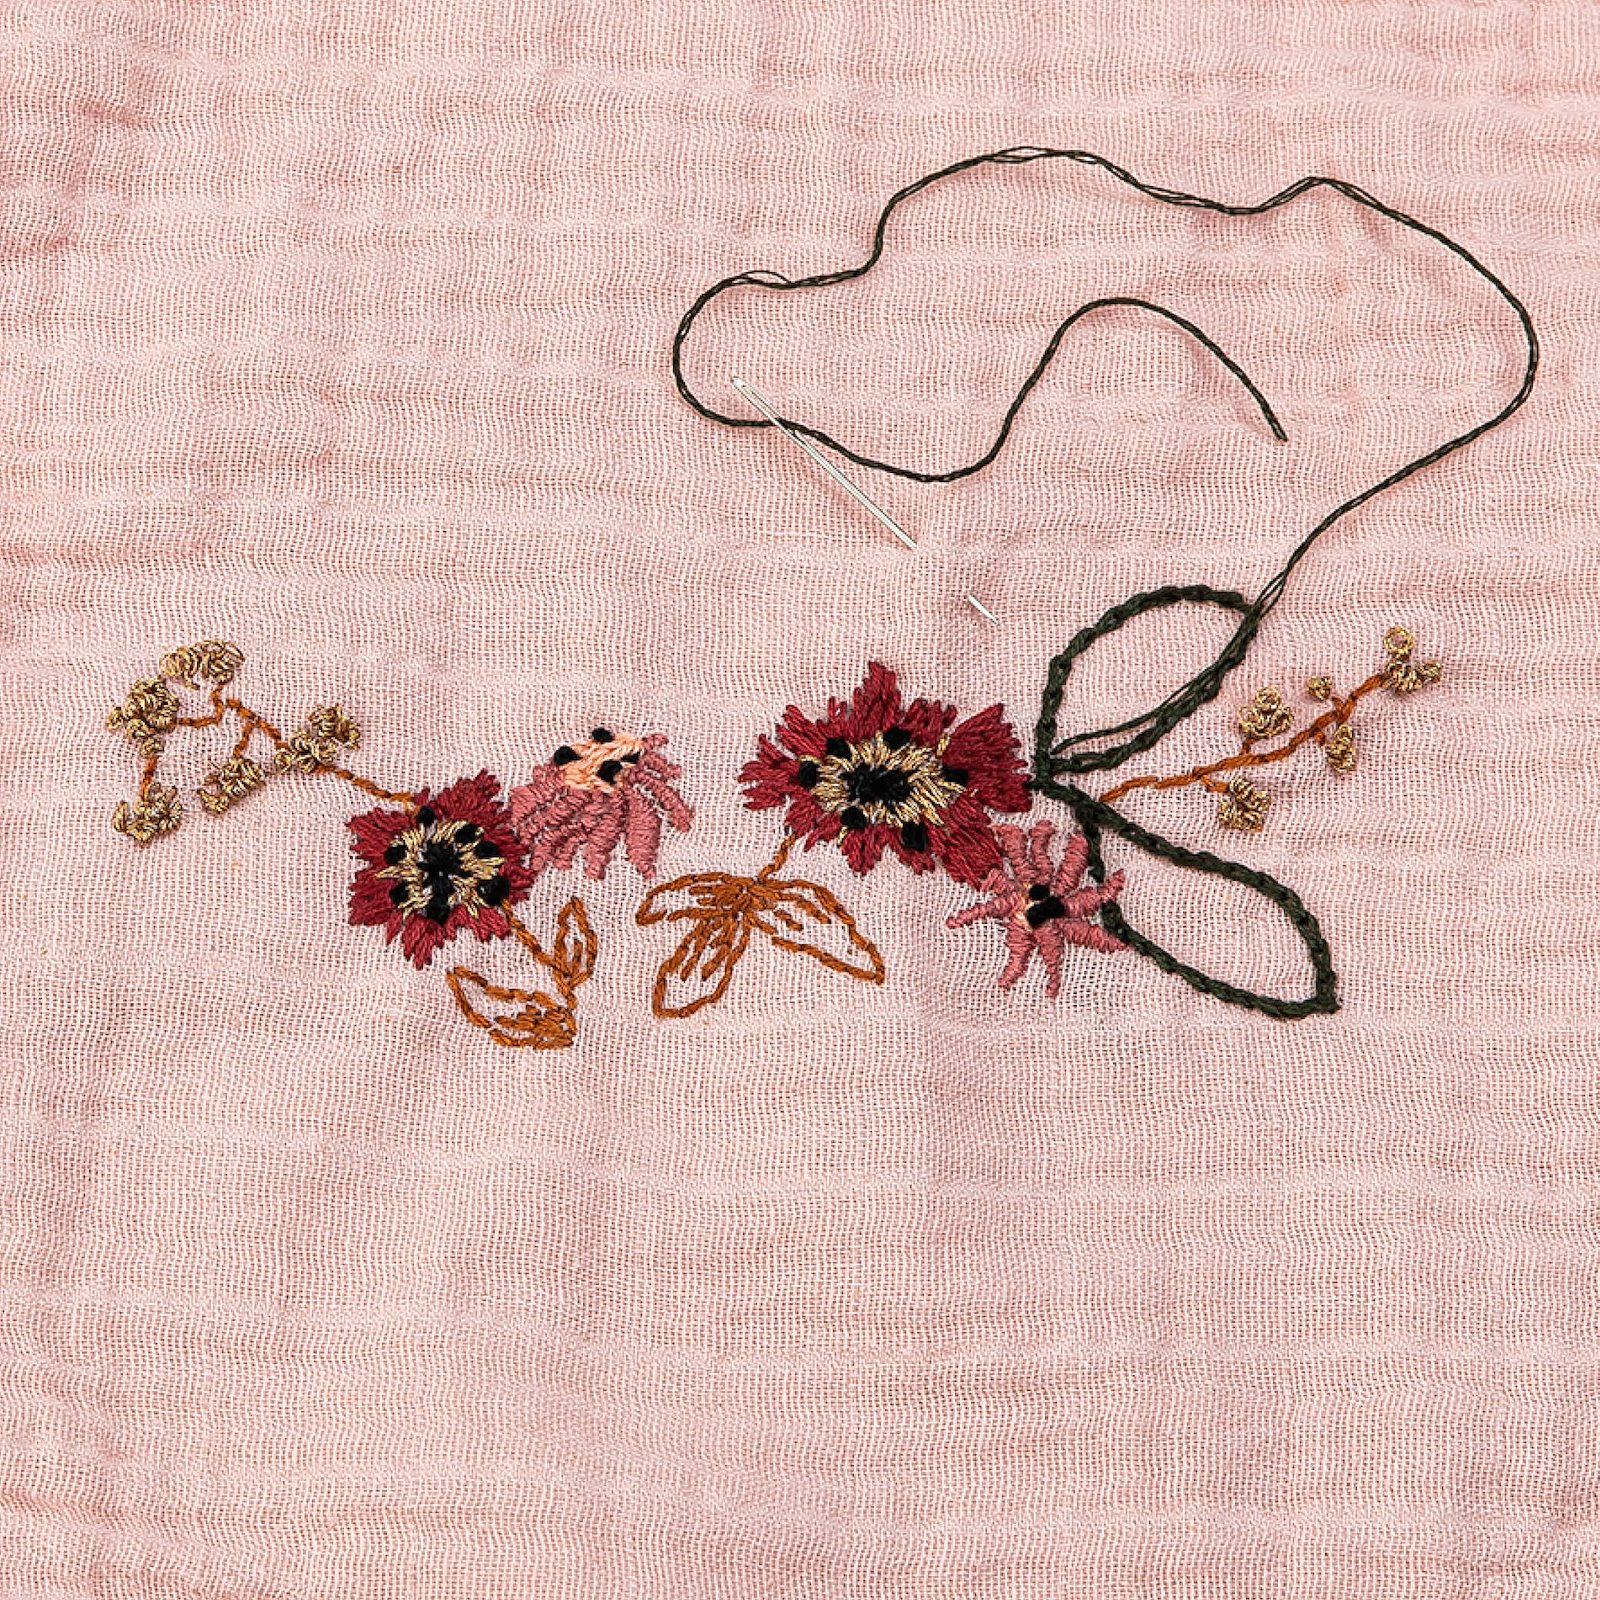 Blombroderi DIY1026_embroidery_flowers-steps6.jpg